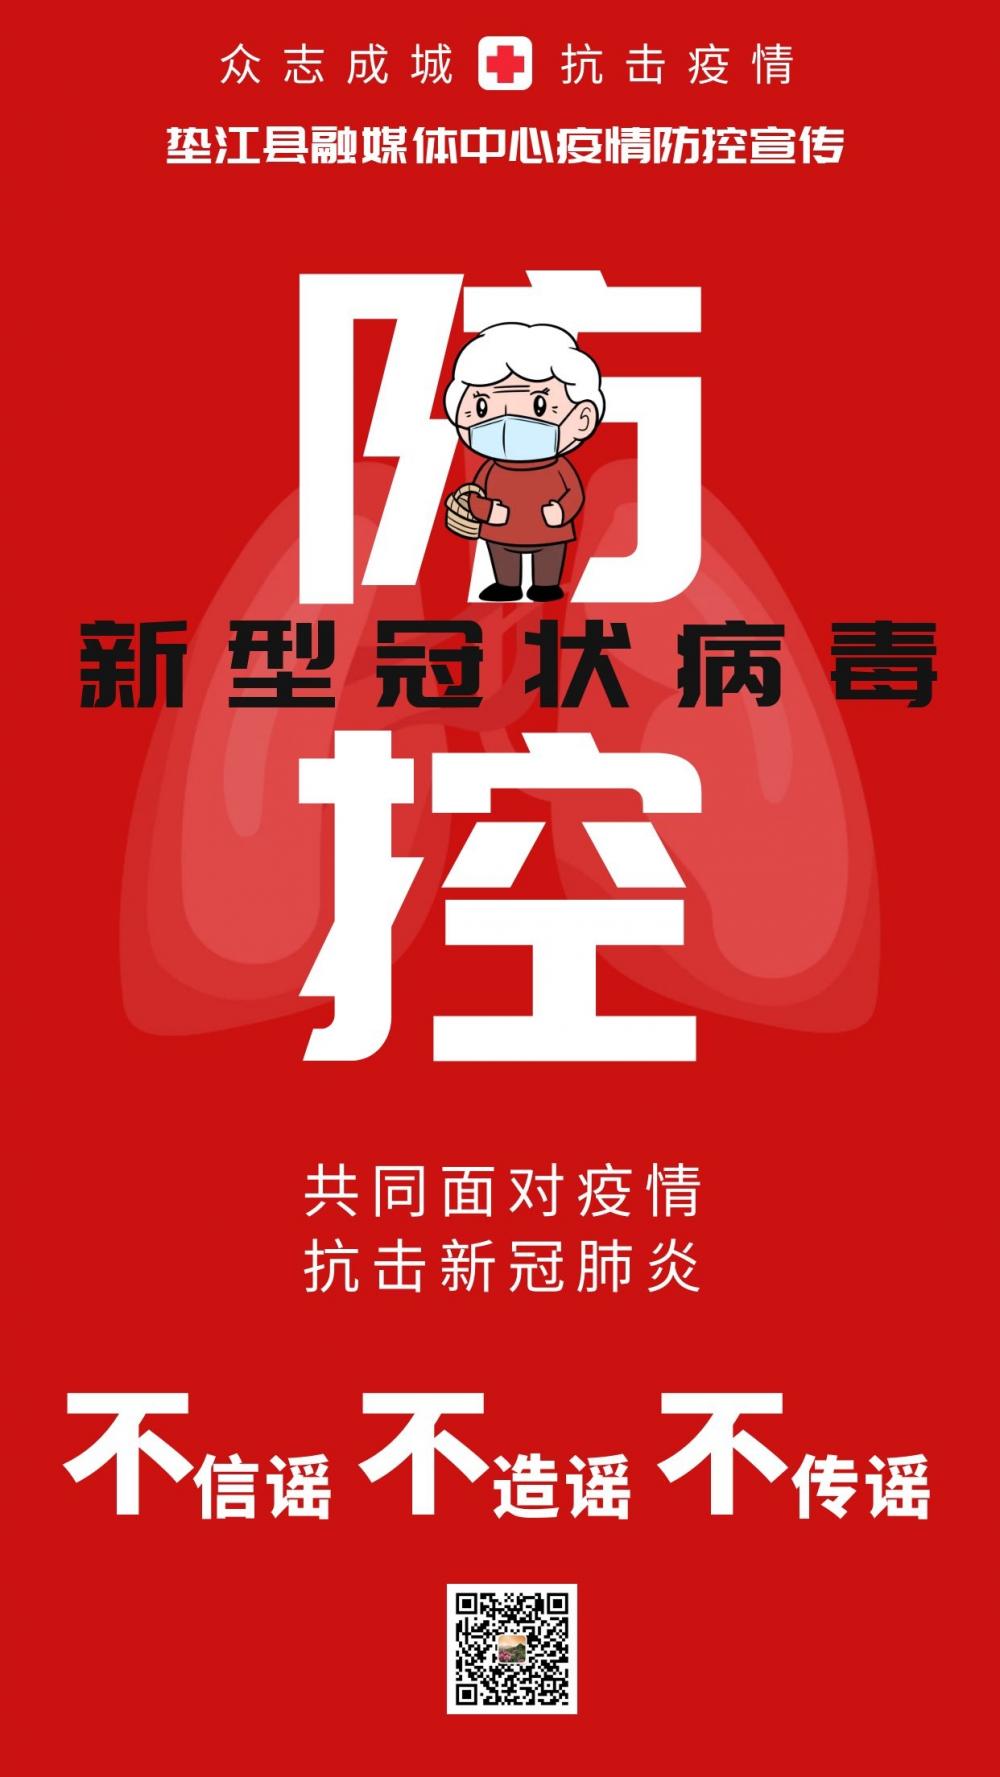 海报垫江县融媒体中心疫情防控宣传